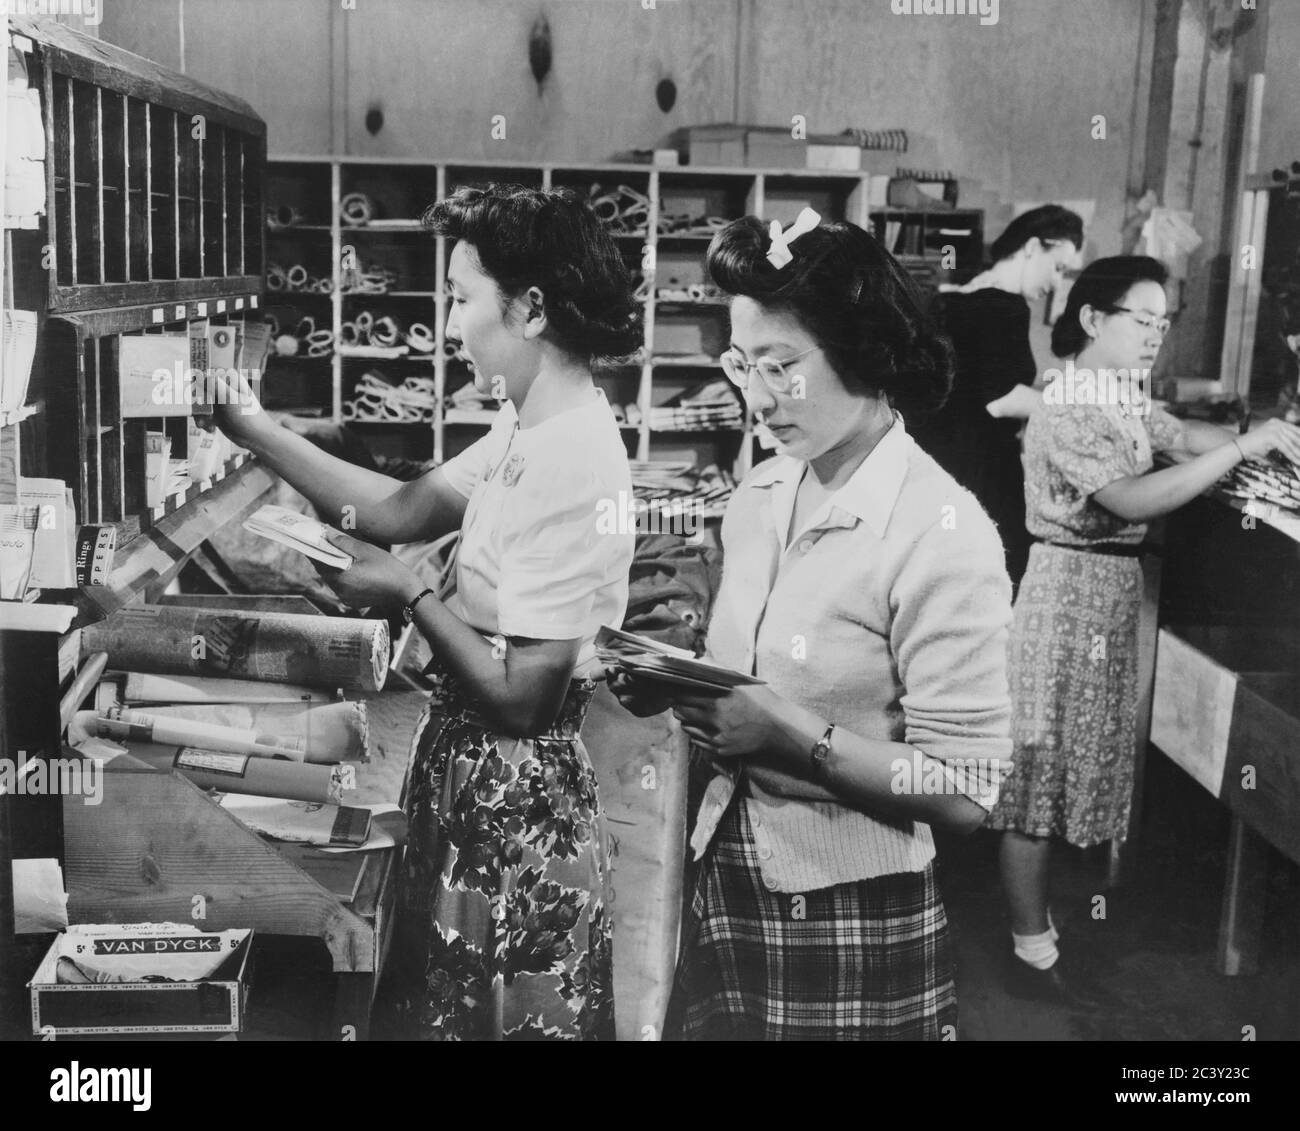 Struttura di detenzione Servizio postale per gli evacuati di Ancestry giapponese, sotto la giurisdizione dell'Ufficio postale degli Stati Uniti, è stato mantenuto e incluso consegna regolare della posta, speciale, pacchi posta e ordini di denaro, Portland, Oregon, USA, U.S. Army Signal Corps, 1942 Foto Stock